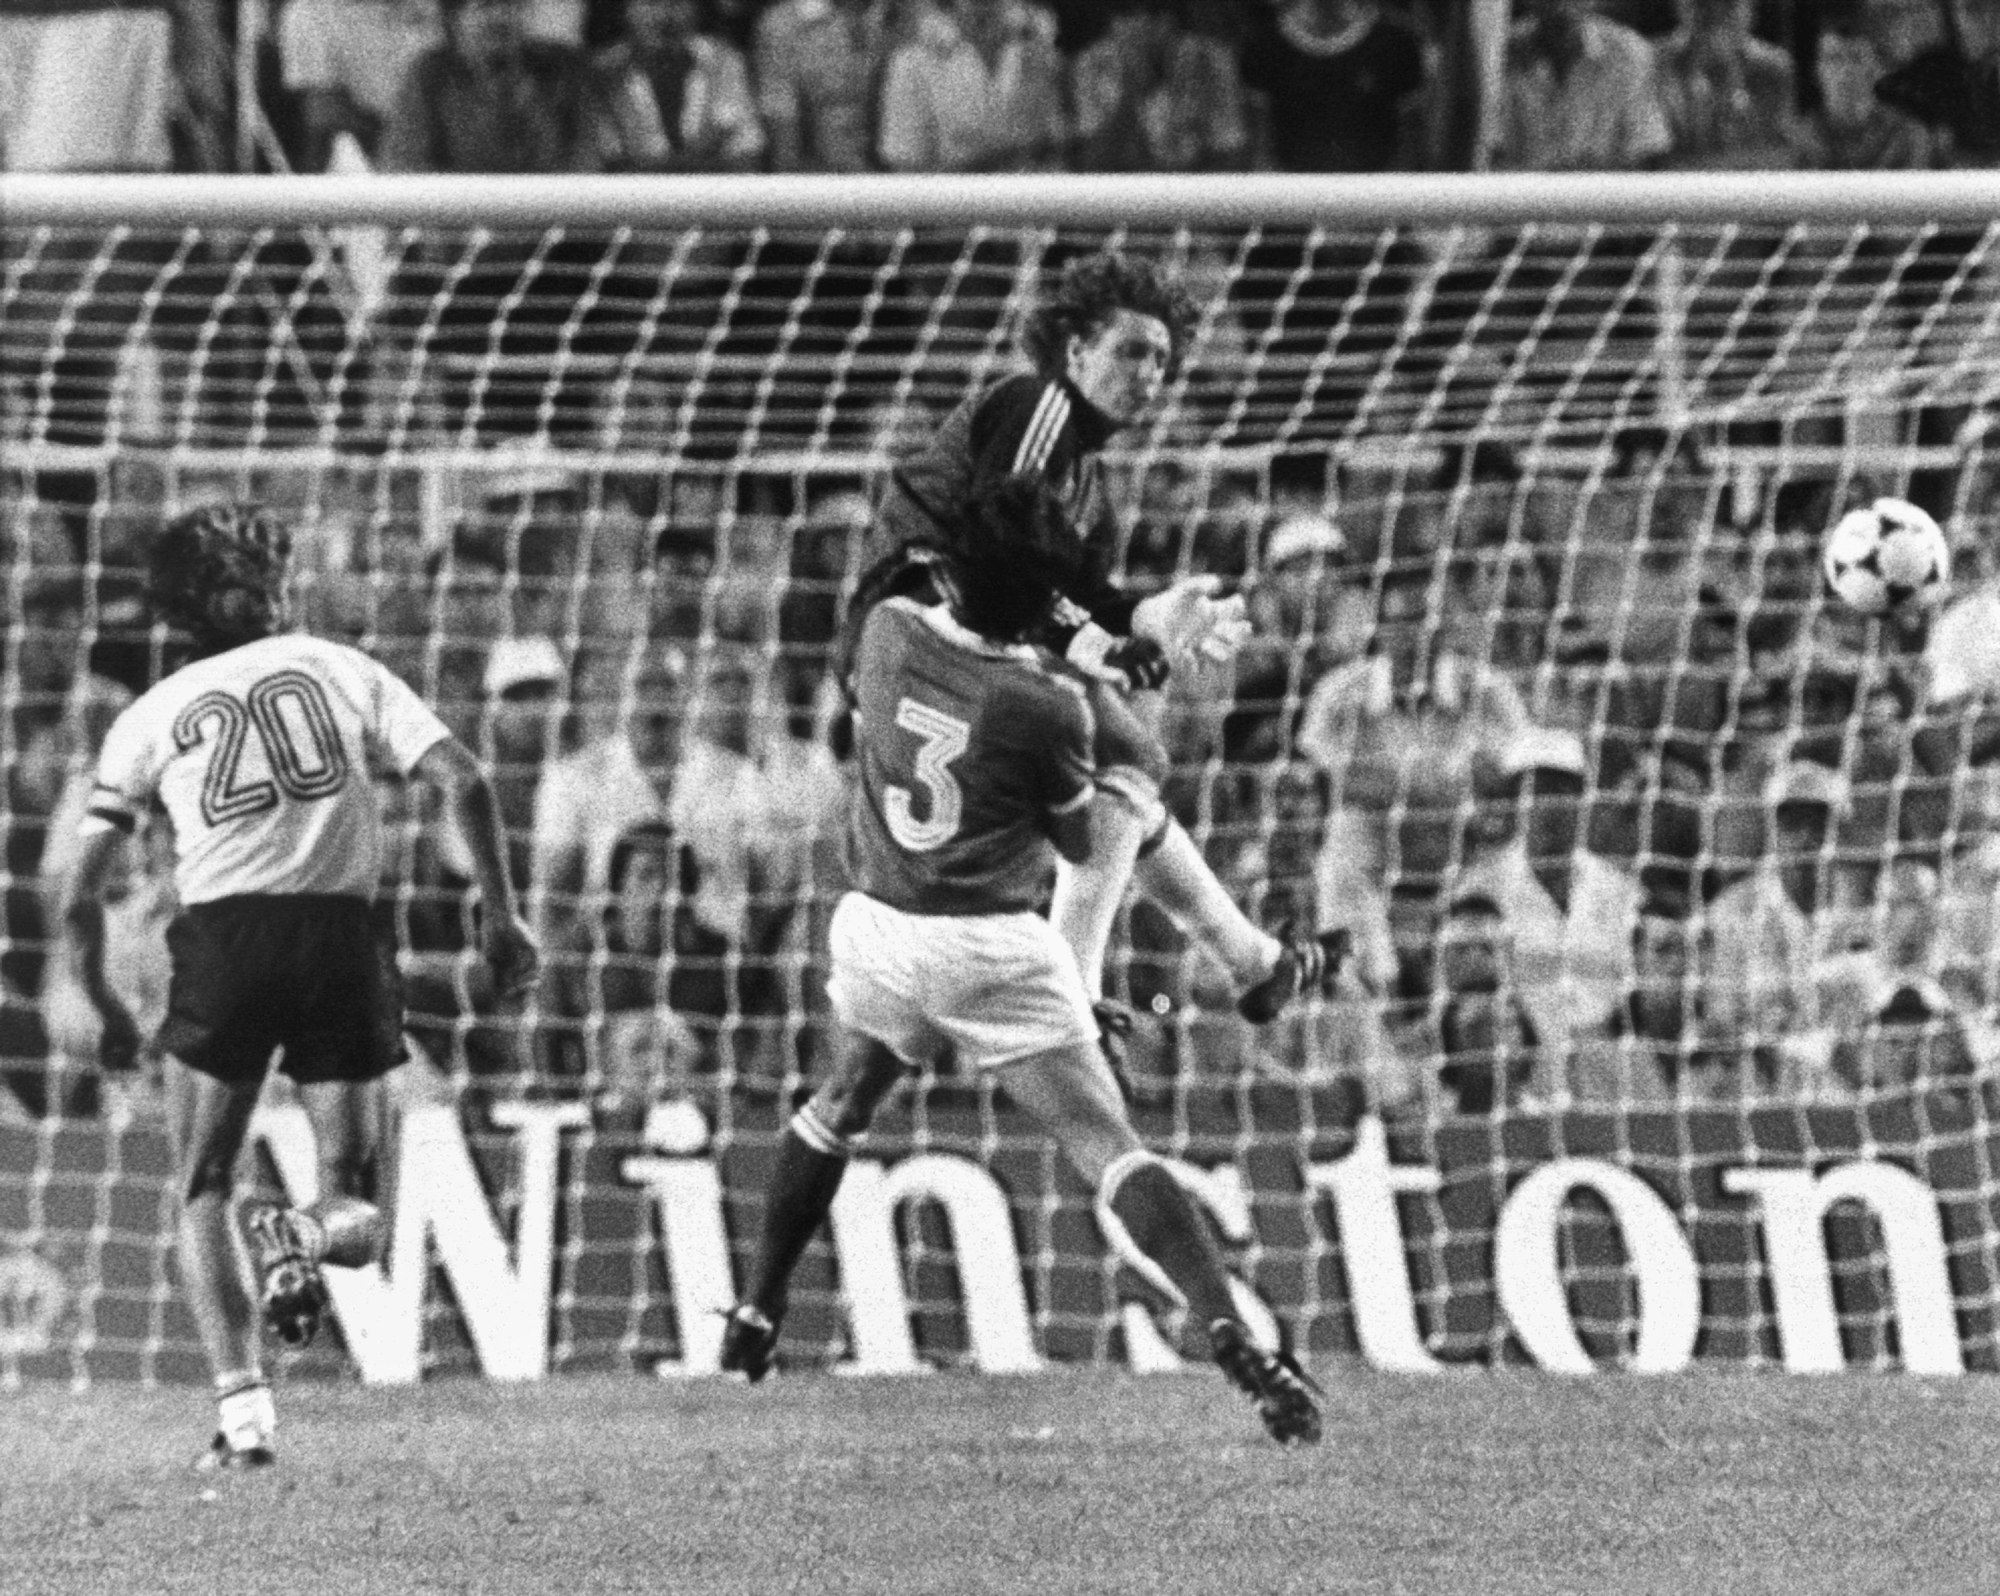 1982, Spanien, Sevilla: Der deutsche Nationaltorwart Harald (Toni) Schumacher springt während des WM-Halfinalspiels gegen Frankreich im Sanchez-Pizjuan-Stadion in Sevilla aus vollem Lauf den französischen Spieler Patrick Battiston (3) an.